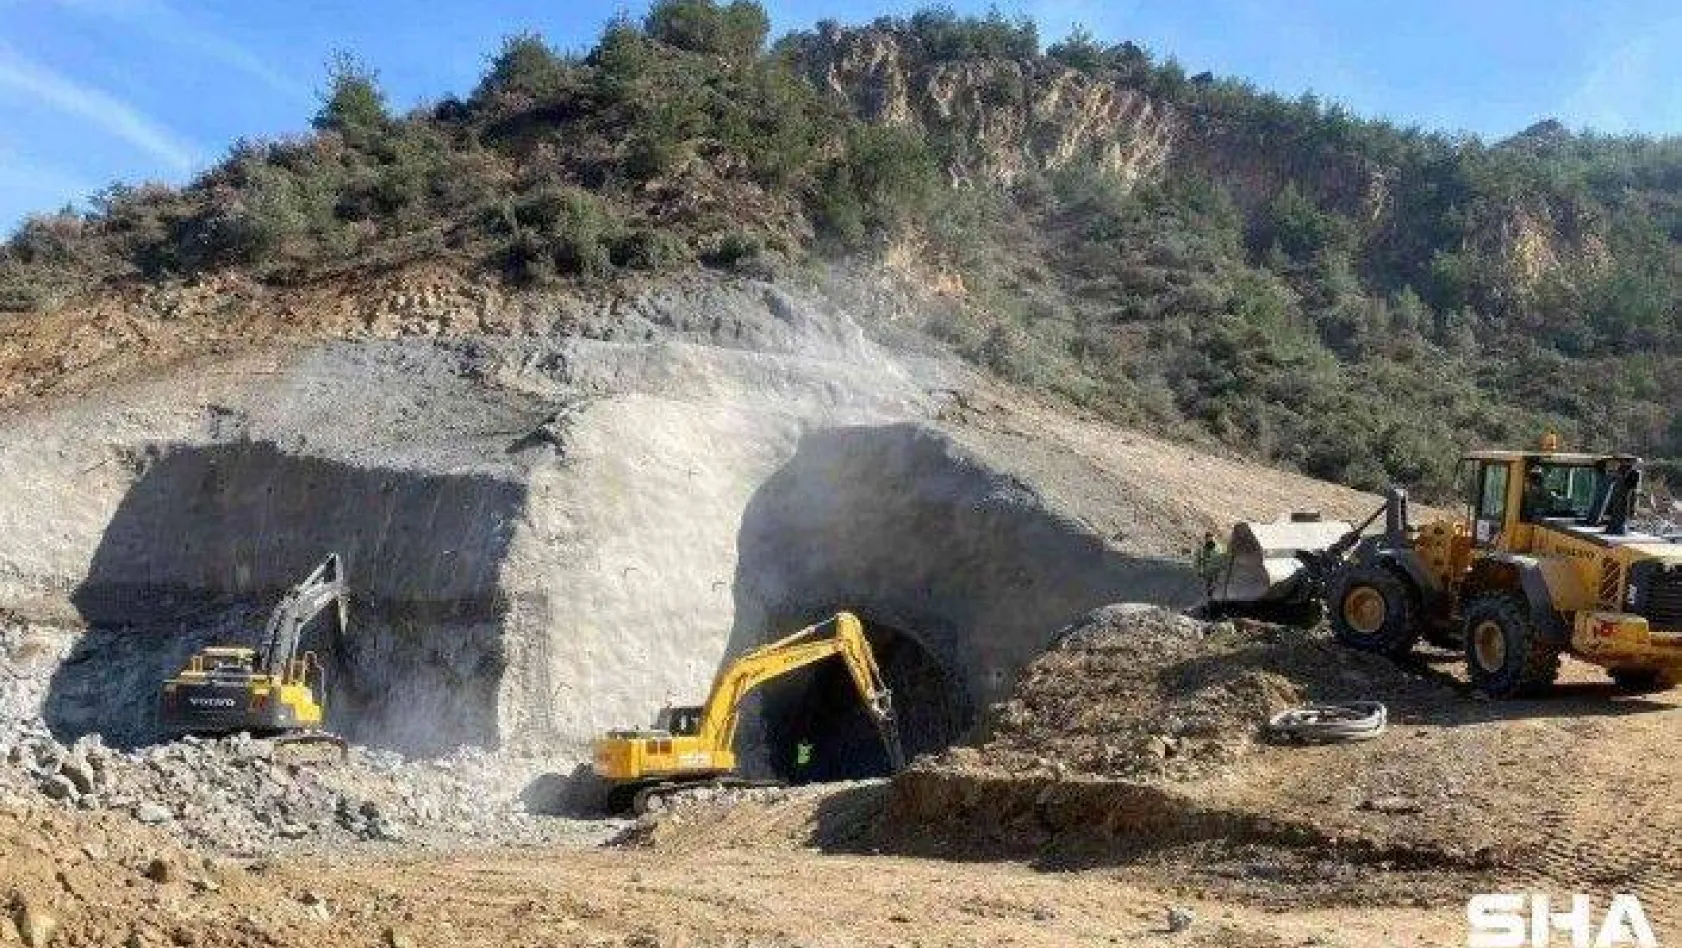 Osmaneli-Yenişehir-Bursa-Bandırma YHT hattı çalışmaları son sürat devam ediyor